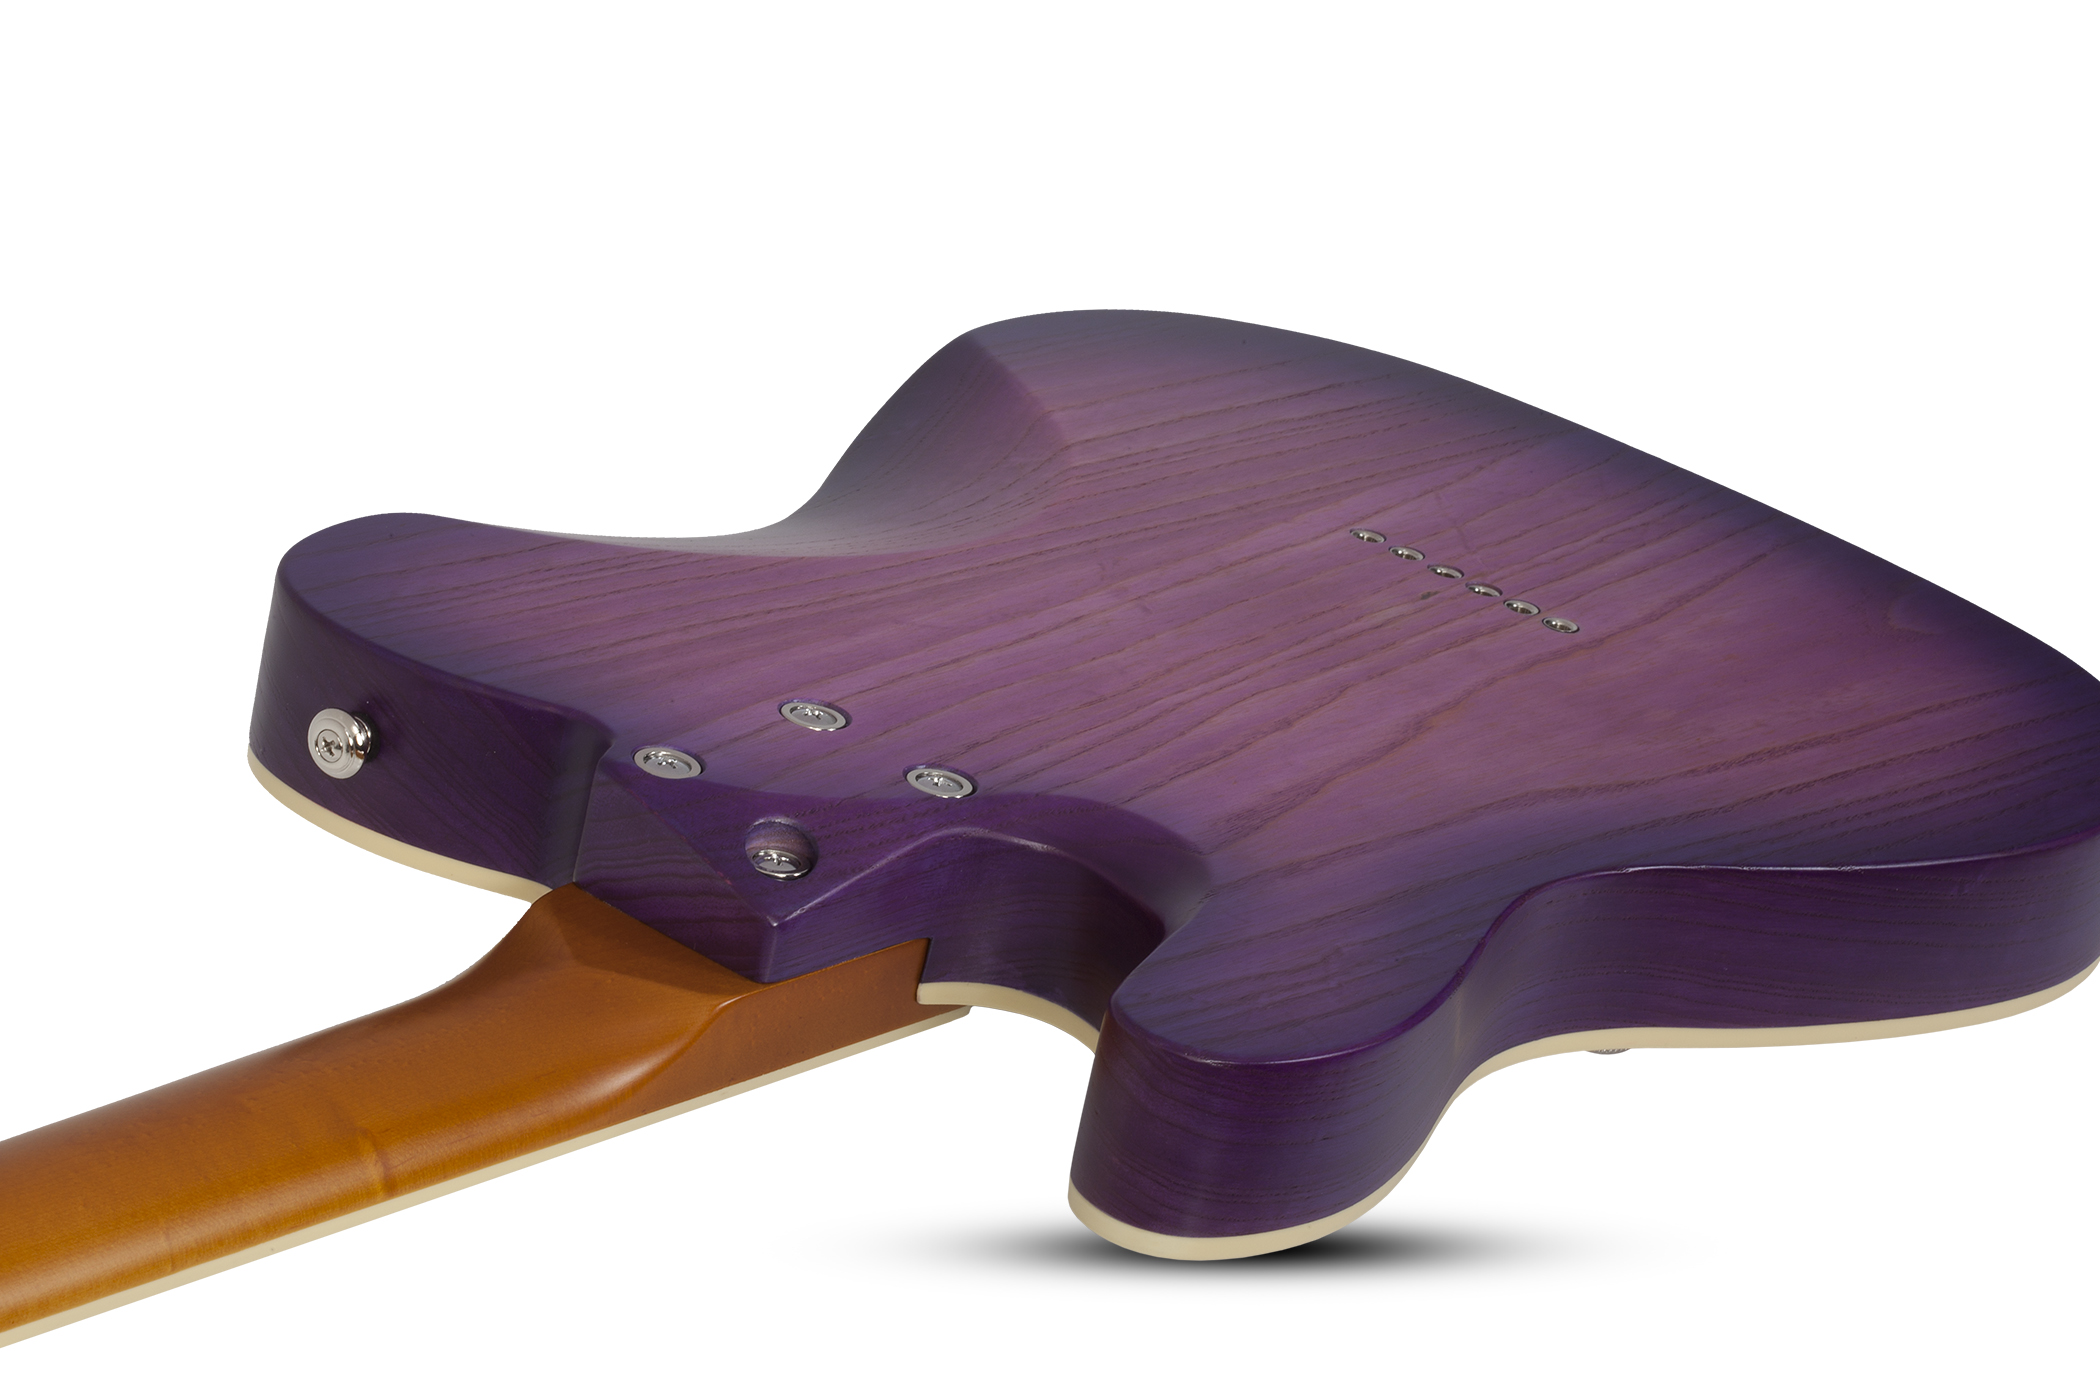 Schecter Pt Special 2s Ht Rw - Purple Burst Pearl - Guitarra eléctrica con forma de tel - Variation 2